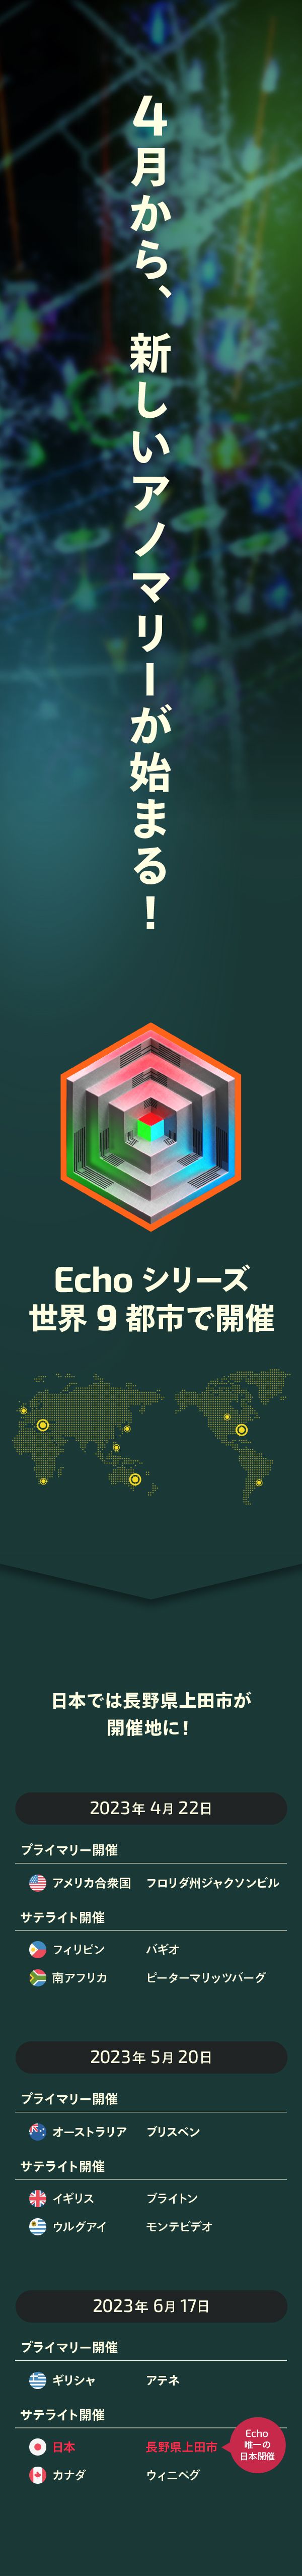 【超図解】これで分かるIngressアノマリー「Echo」